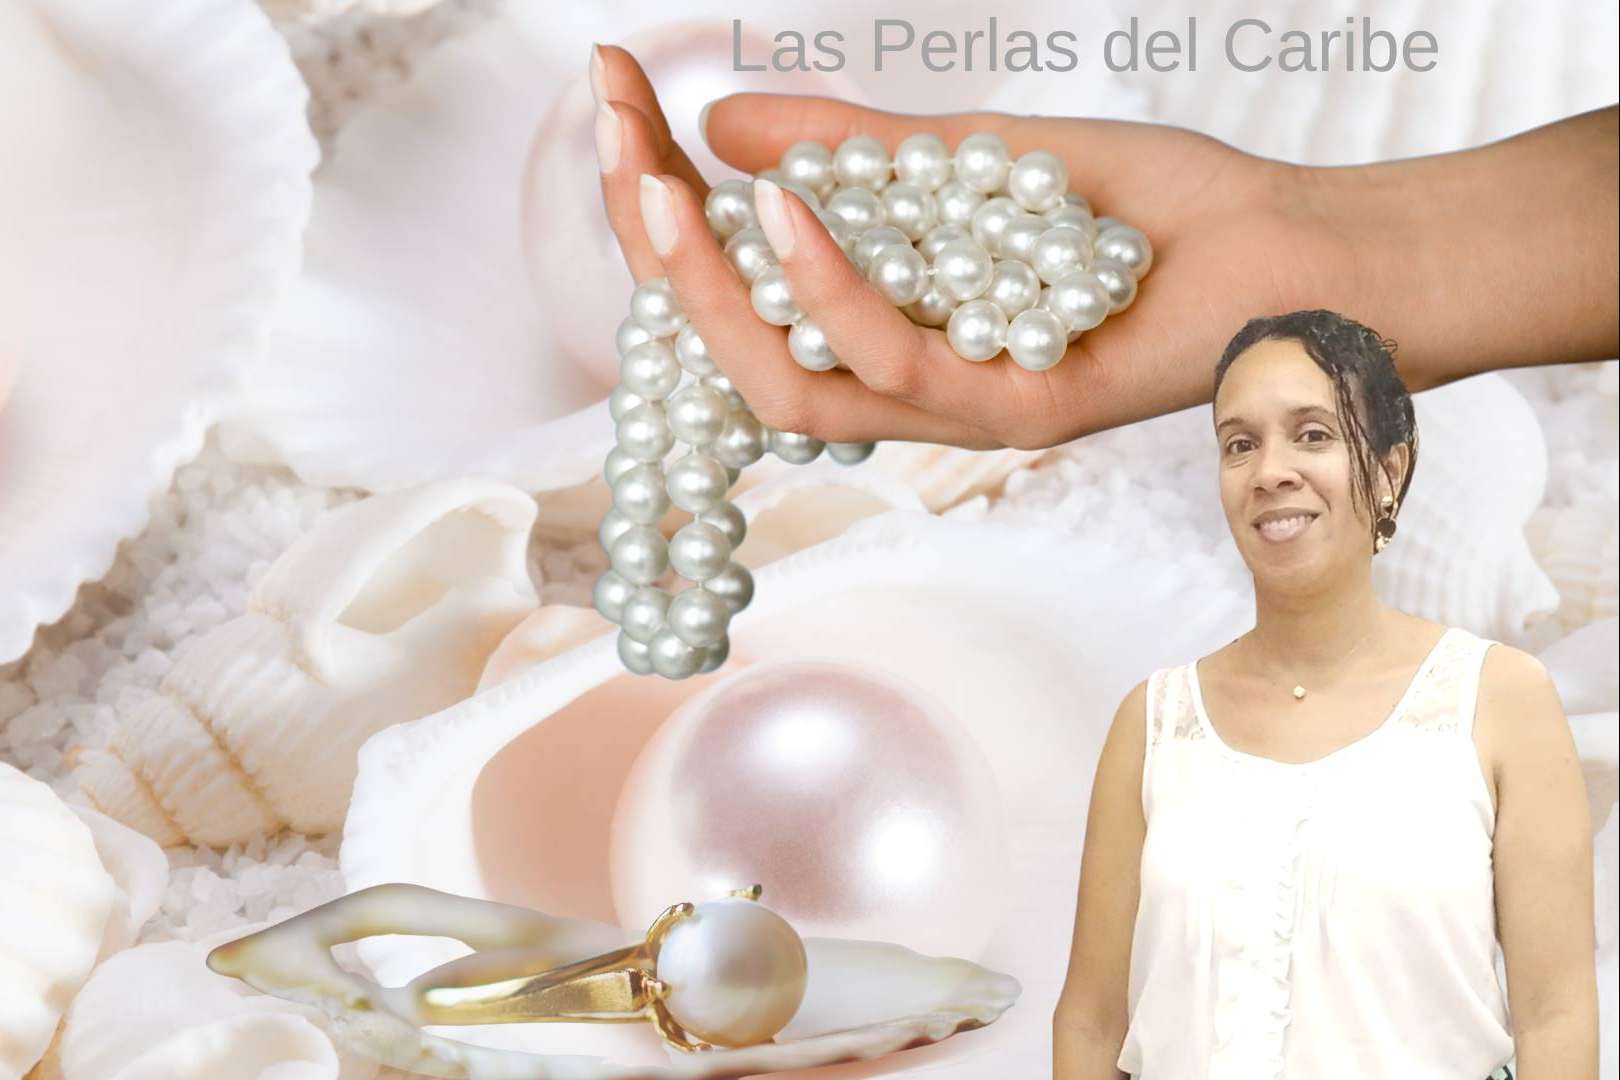 La Perla del Caribe en la última colección de Yonafar Cárdenas